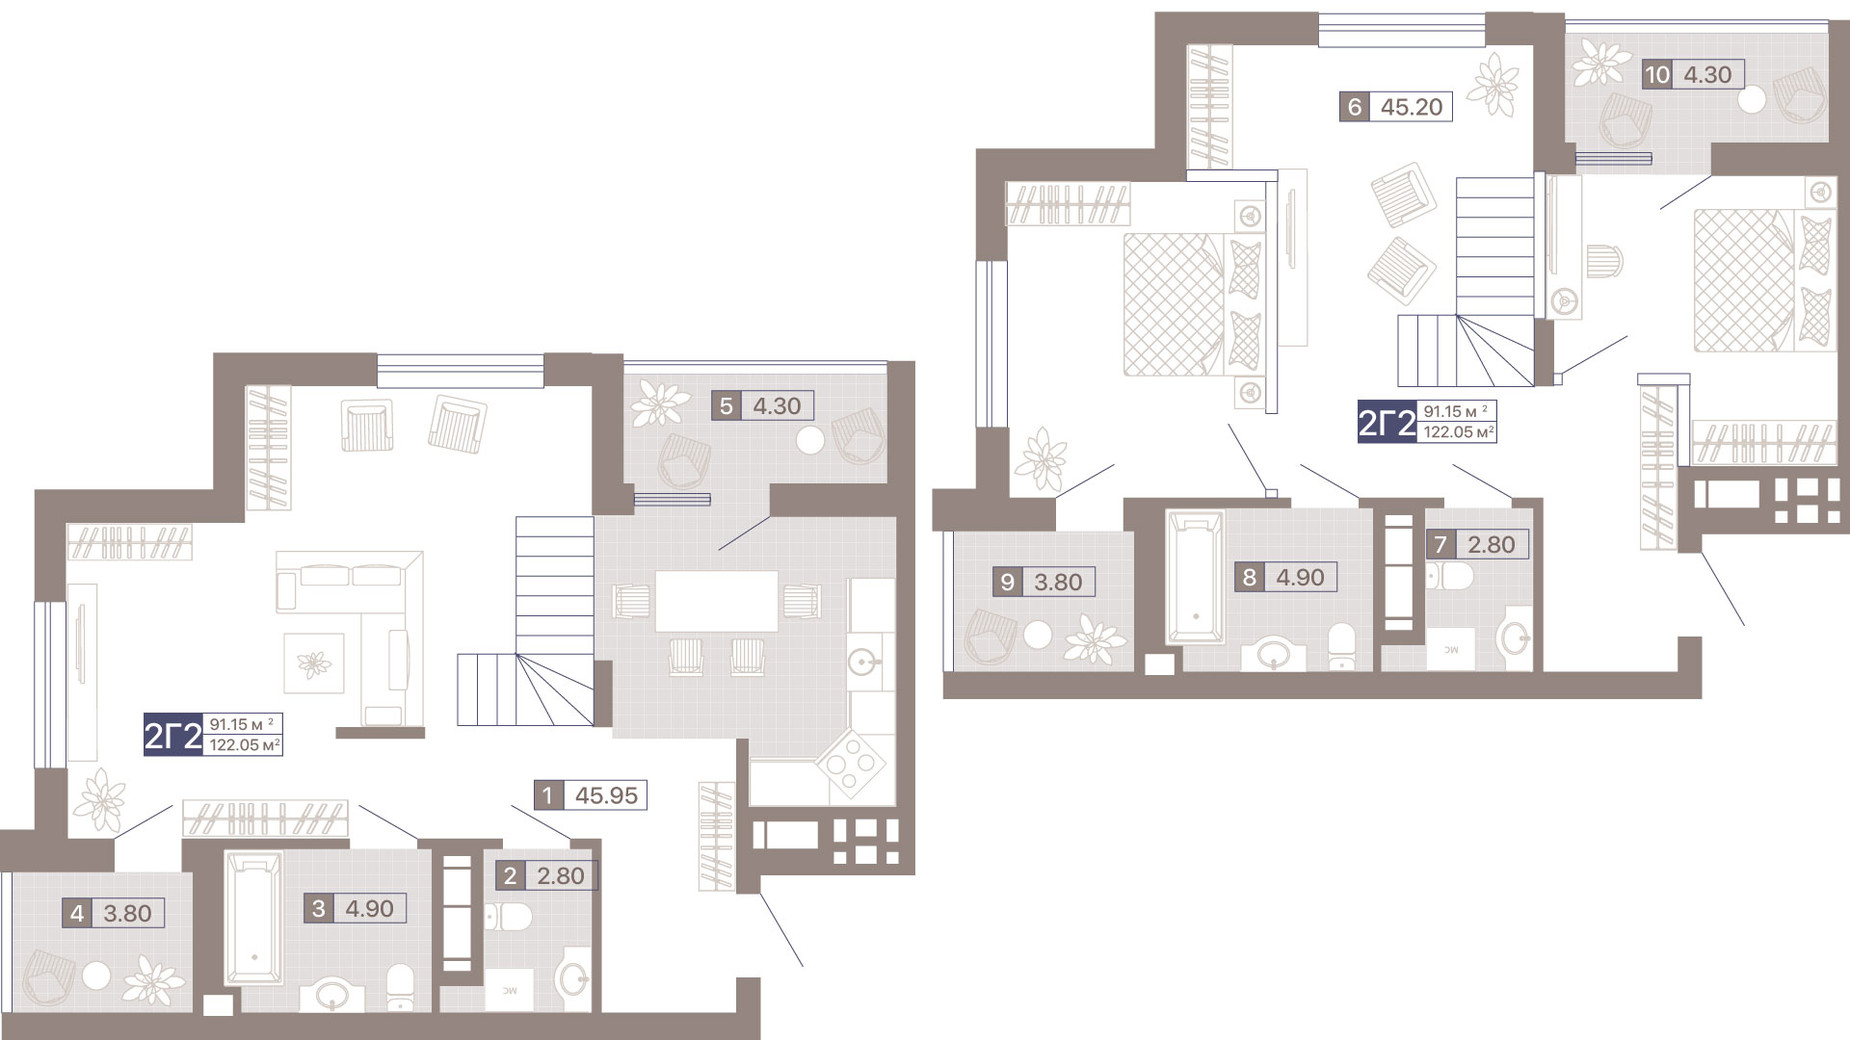 Планировка много­уровневой квартиры в ЖК Лукьяновский каскад 122.05 м², фото 359288